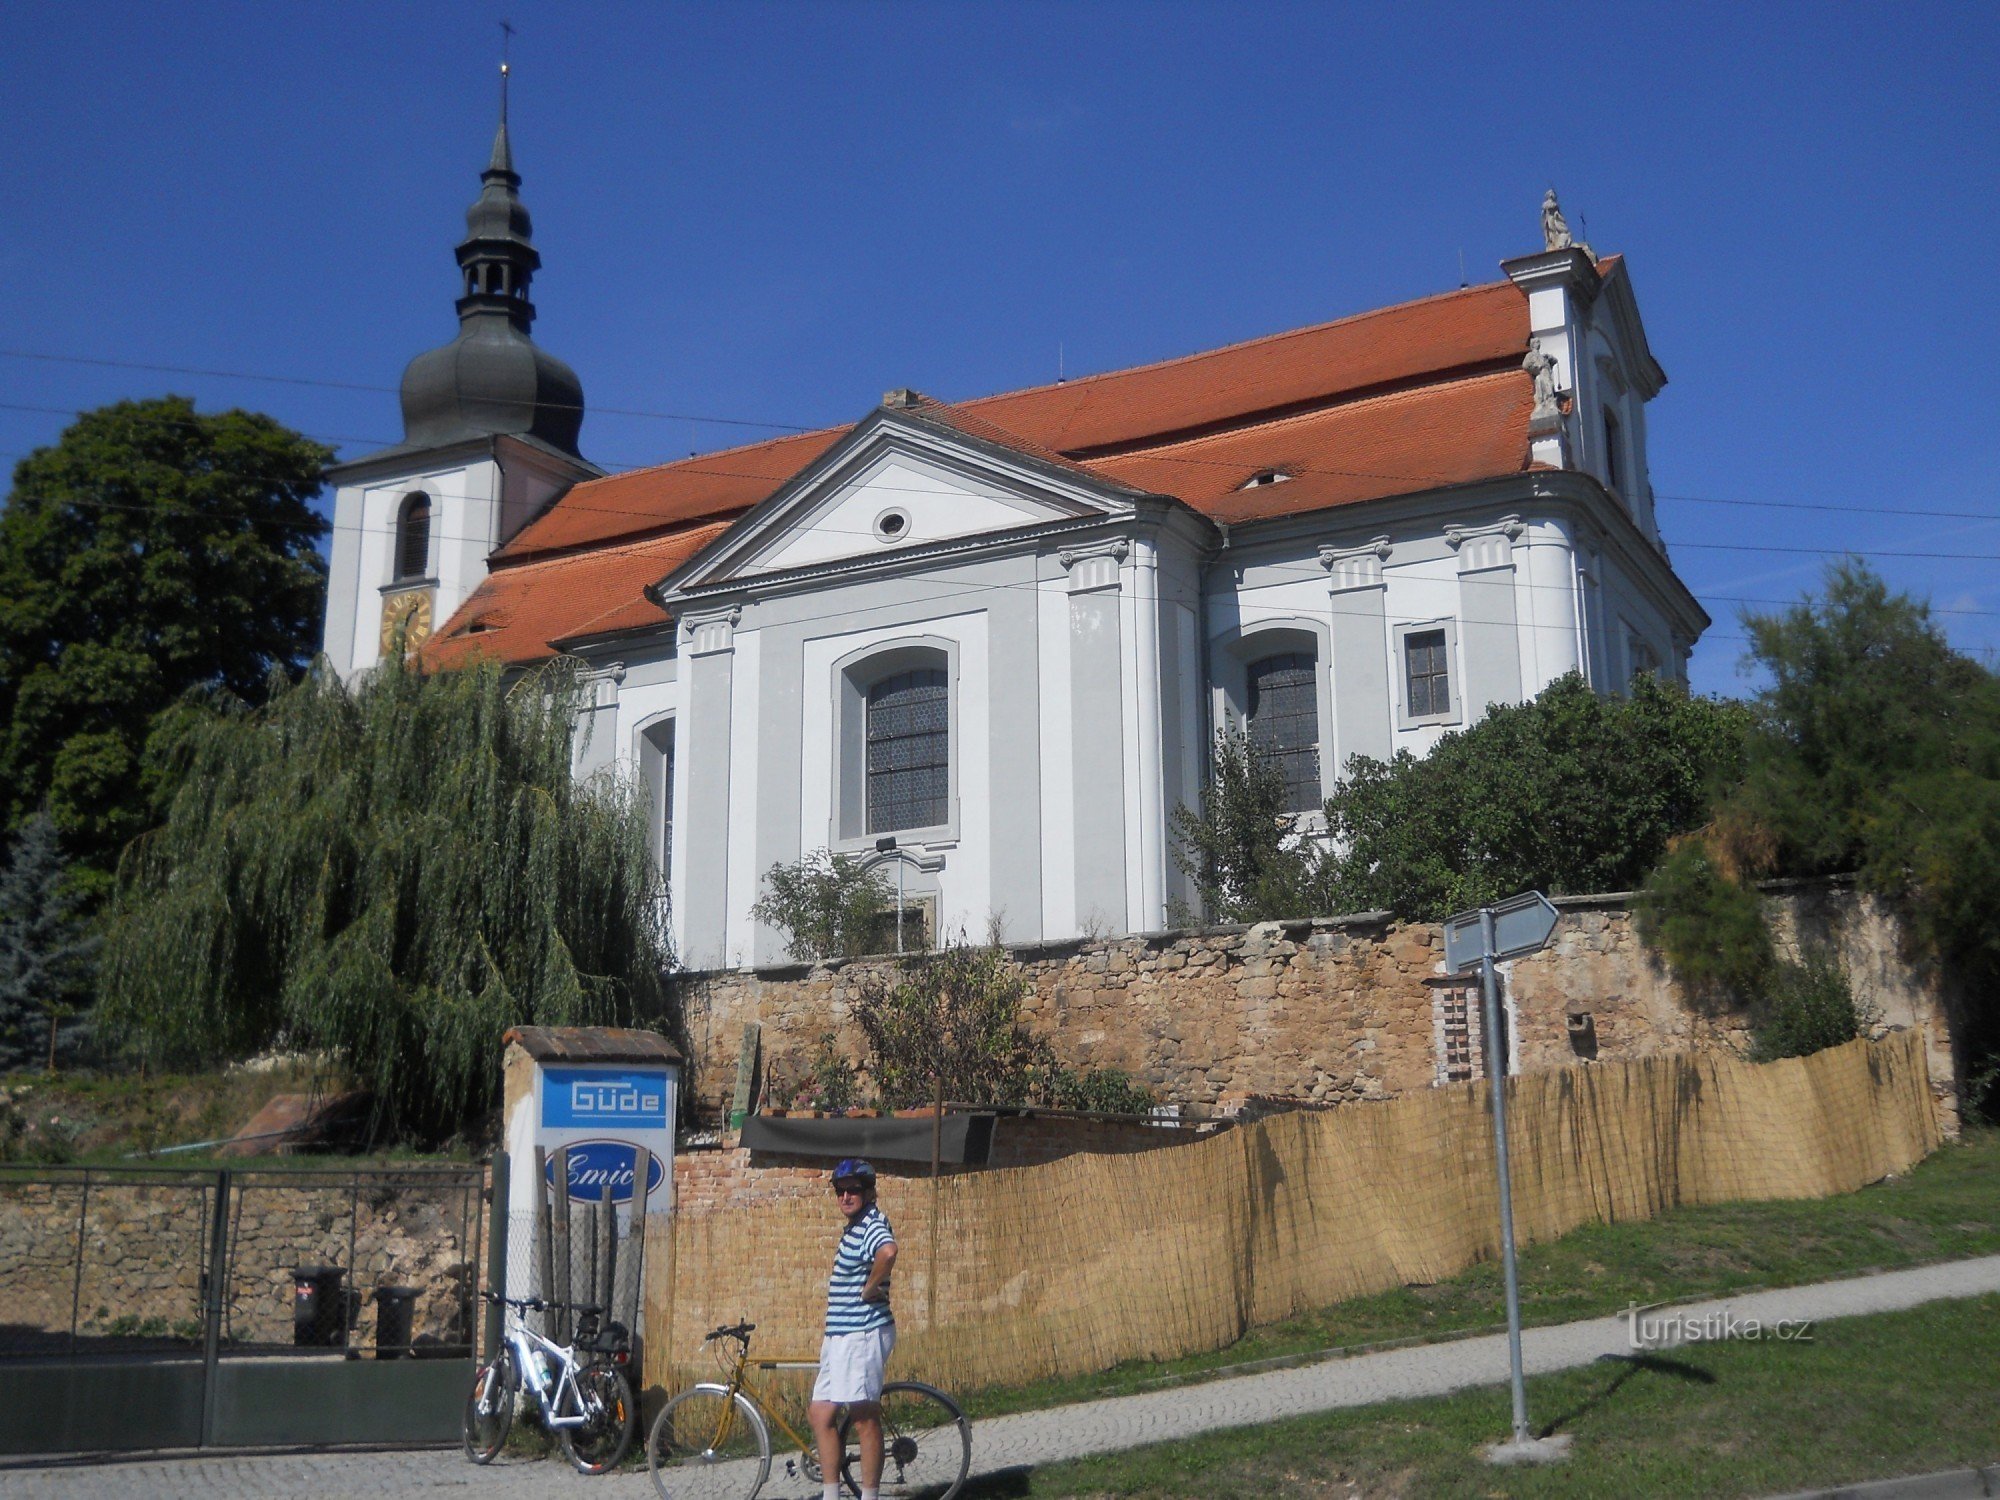 Vejprnice - église baroque de St. Vojtech de 1722 - 1726